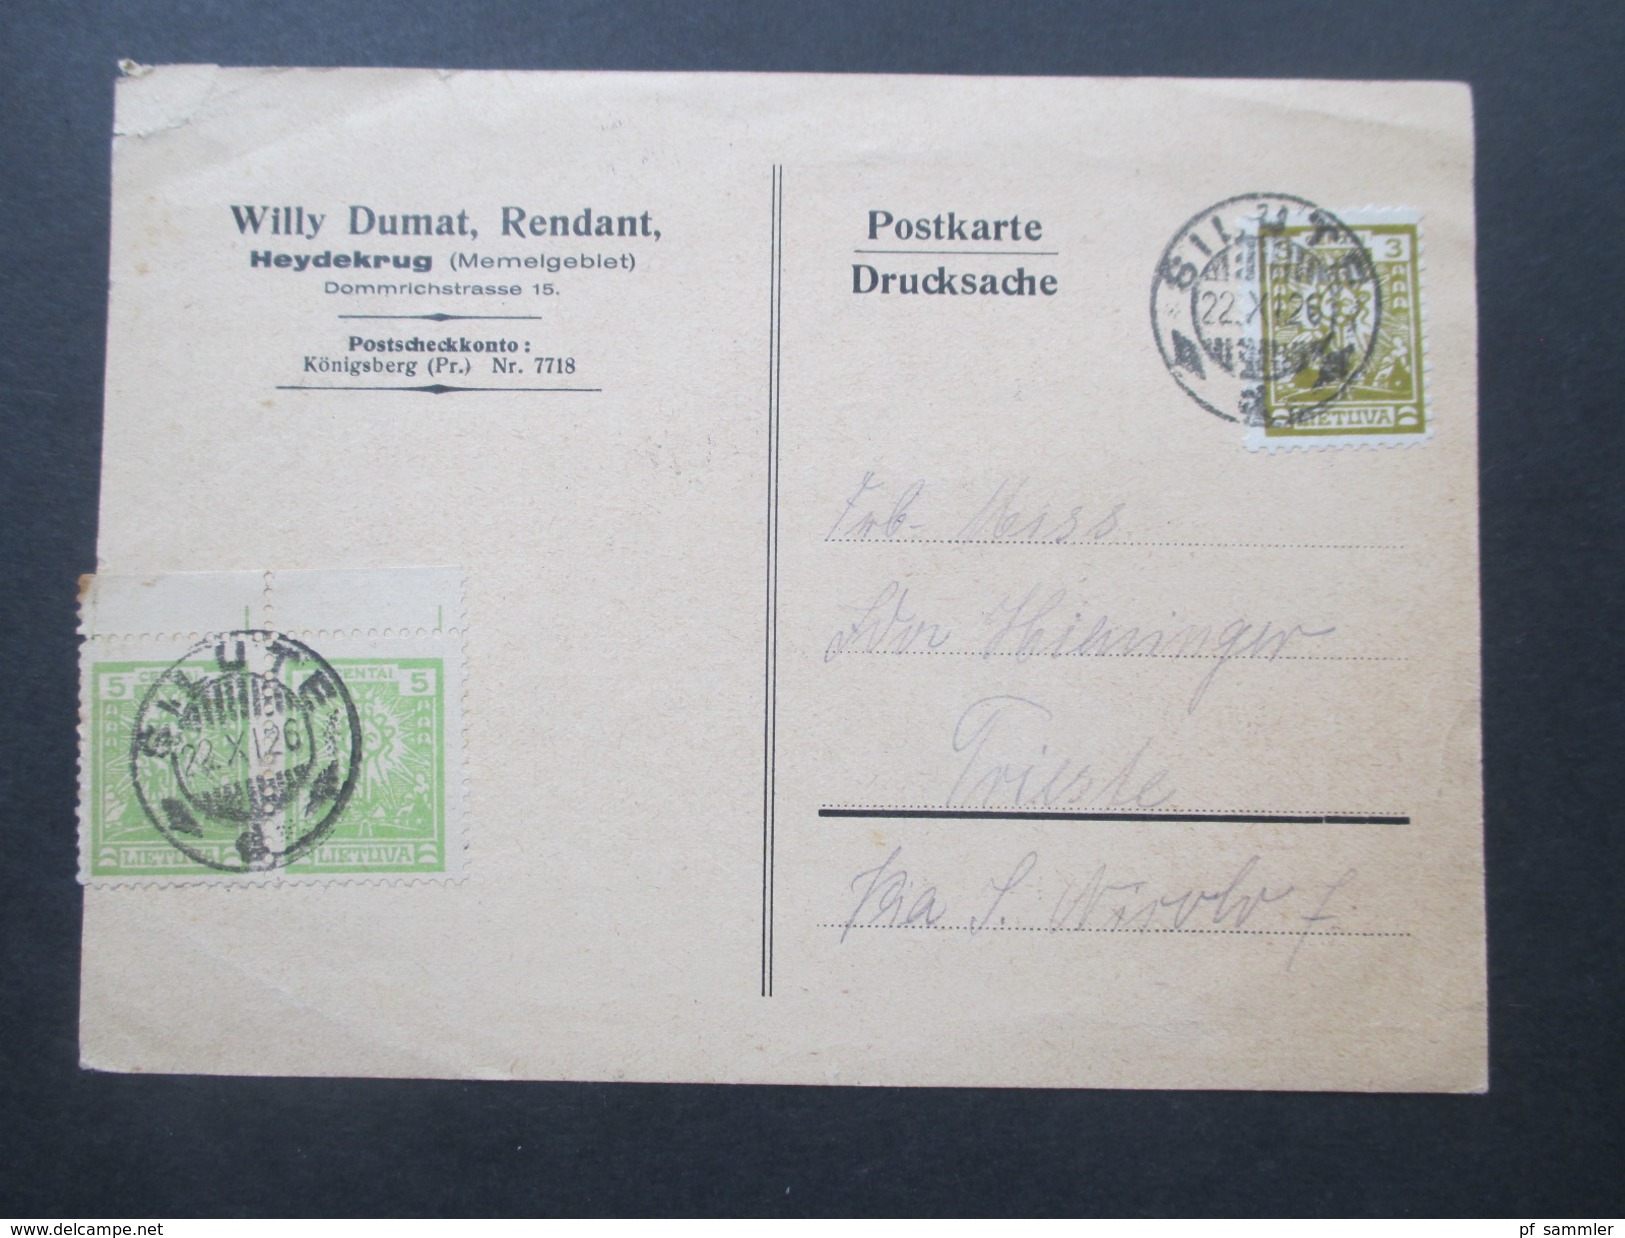 Deutsches Reich Memelgebiet 1926 Postkarte Silute. Willy Dumat, Rendant. Heydekrug. Briefmarkenhändler. Nach Trieste - Memel (Klaipeda) 1923